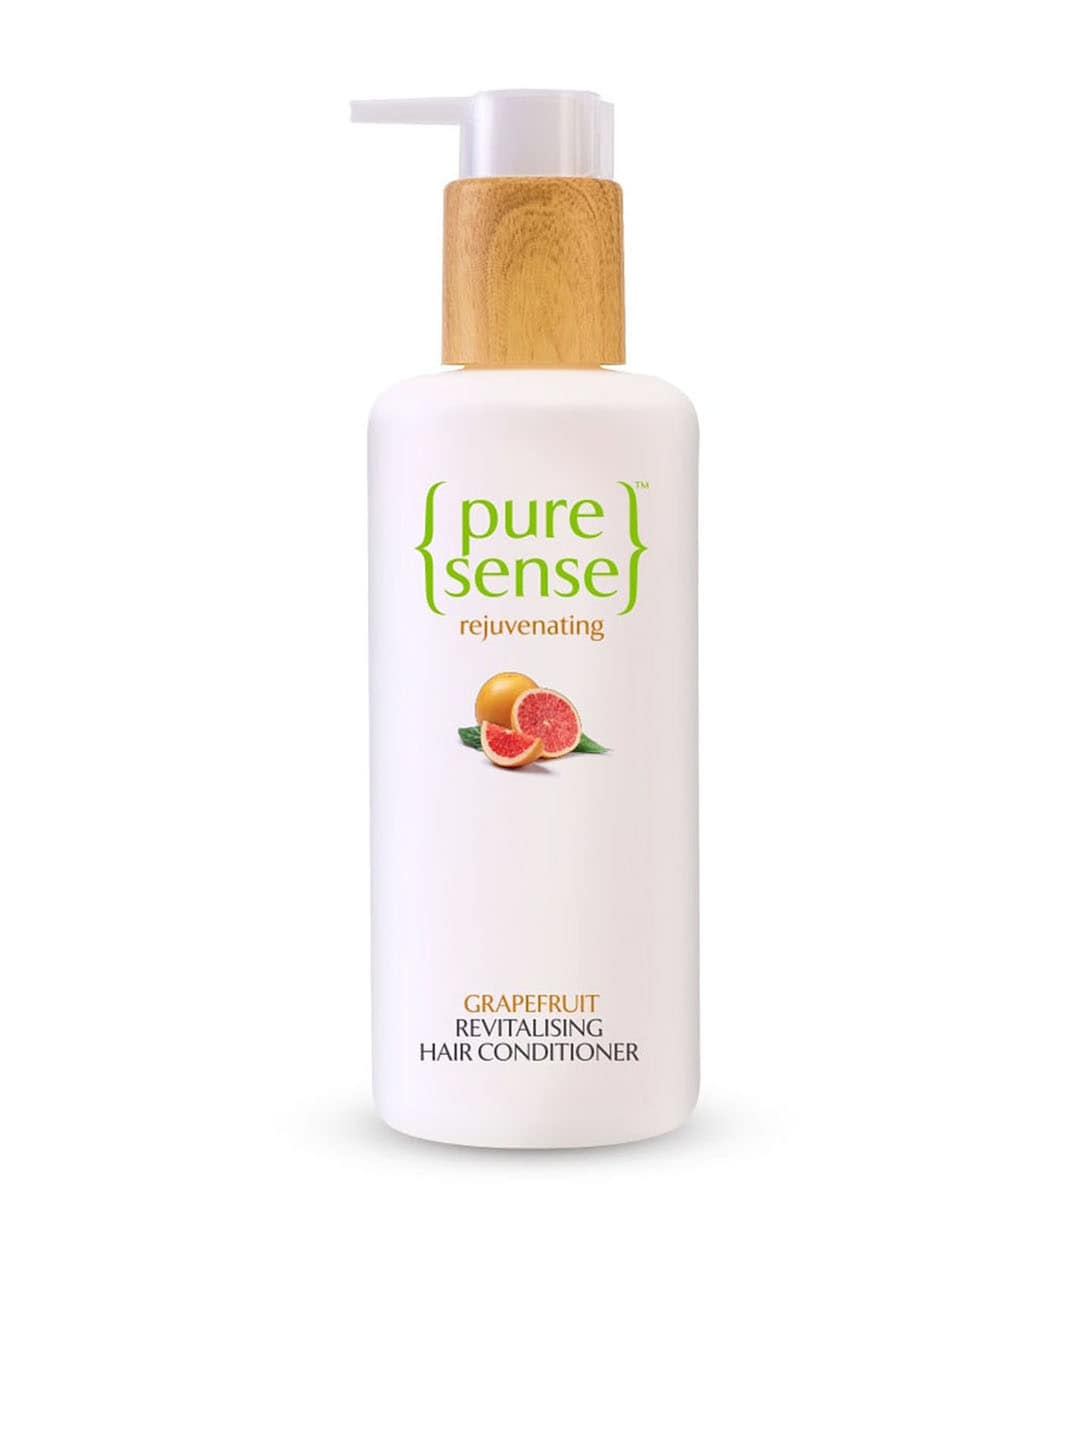 Pure Sense Rejuvenating Grapefruit Revitalising Hair Conditioner 200 ml Price in India